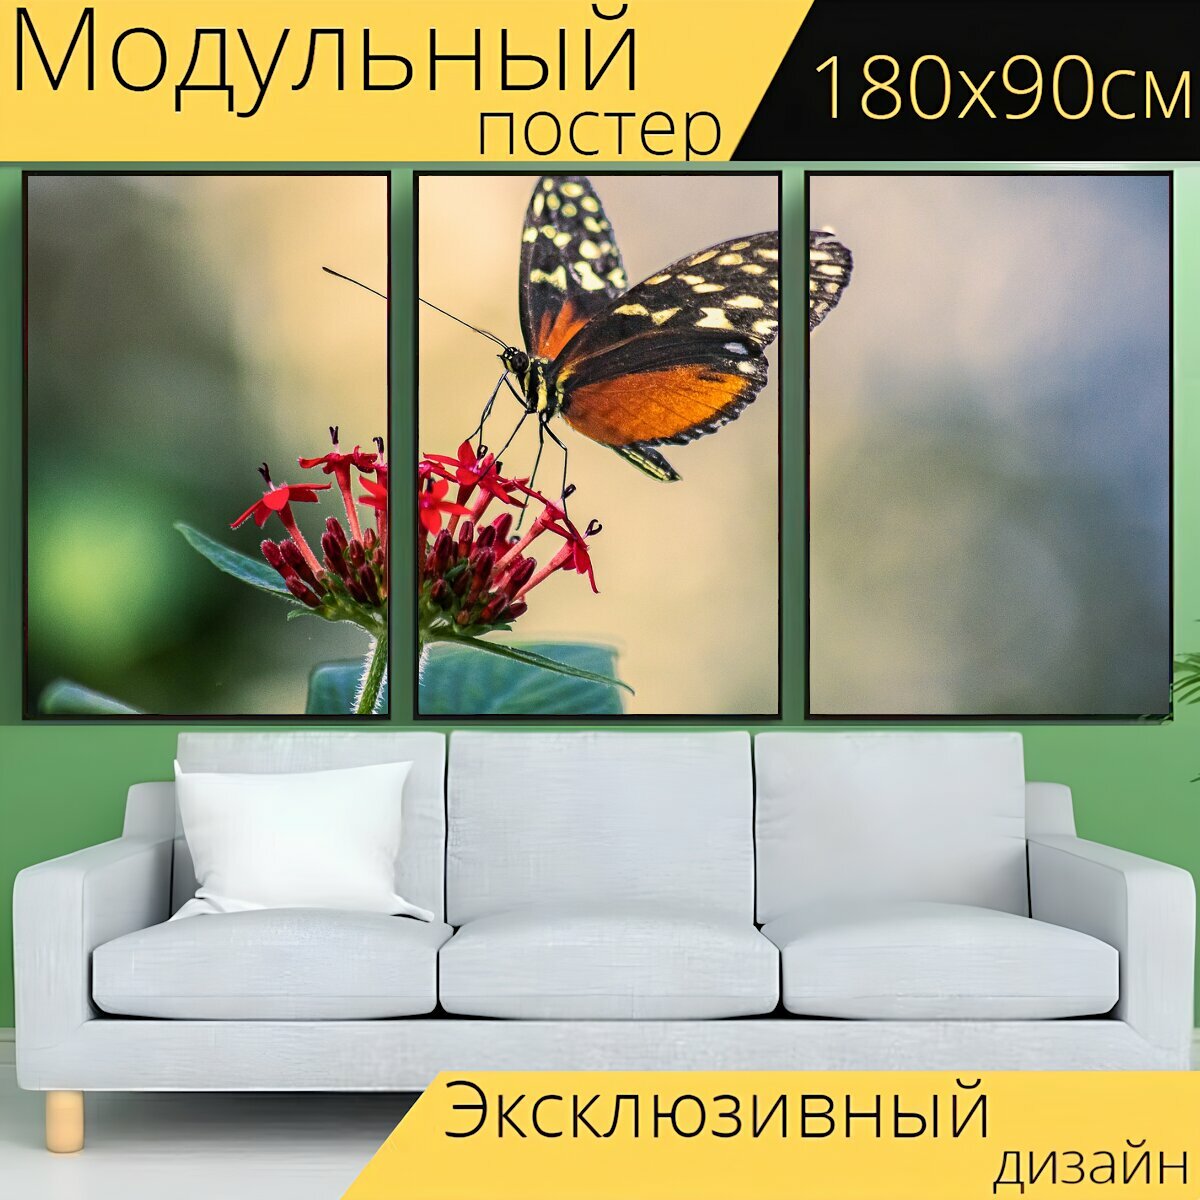 Модульный постер "Бабочка, насекомое, крылья" 180 x 90 см. для интерьера